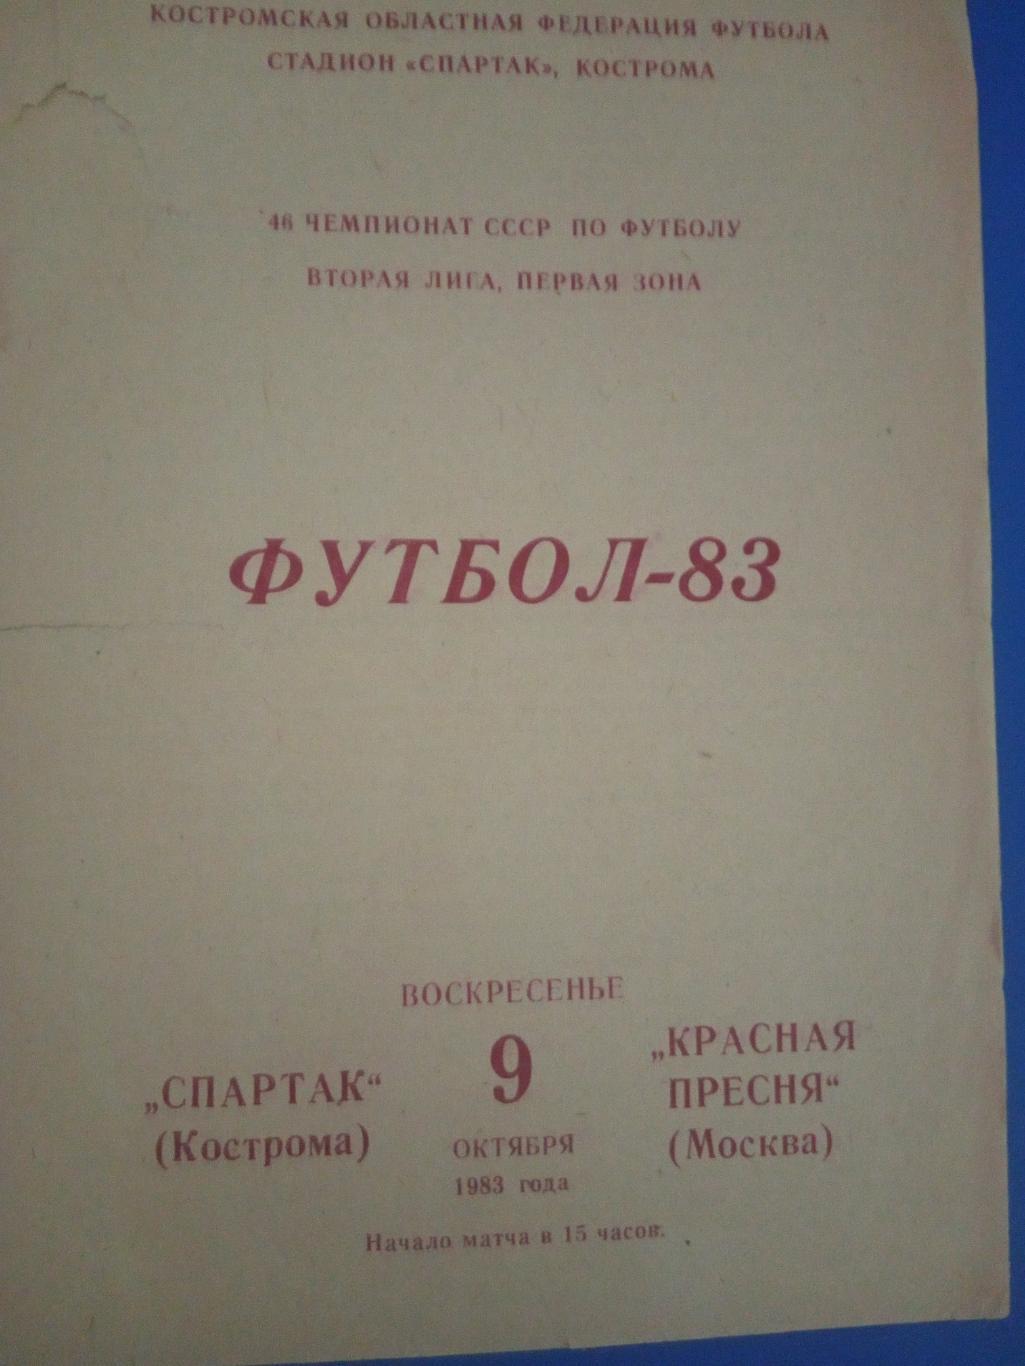 Спартак Кострома - Красная Пресня Москва 9 октября 1983